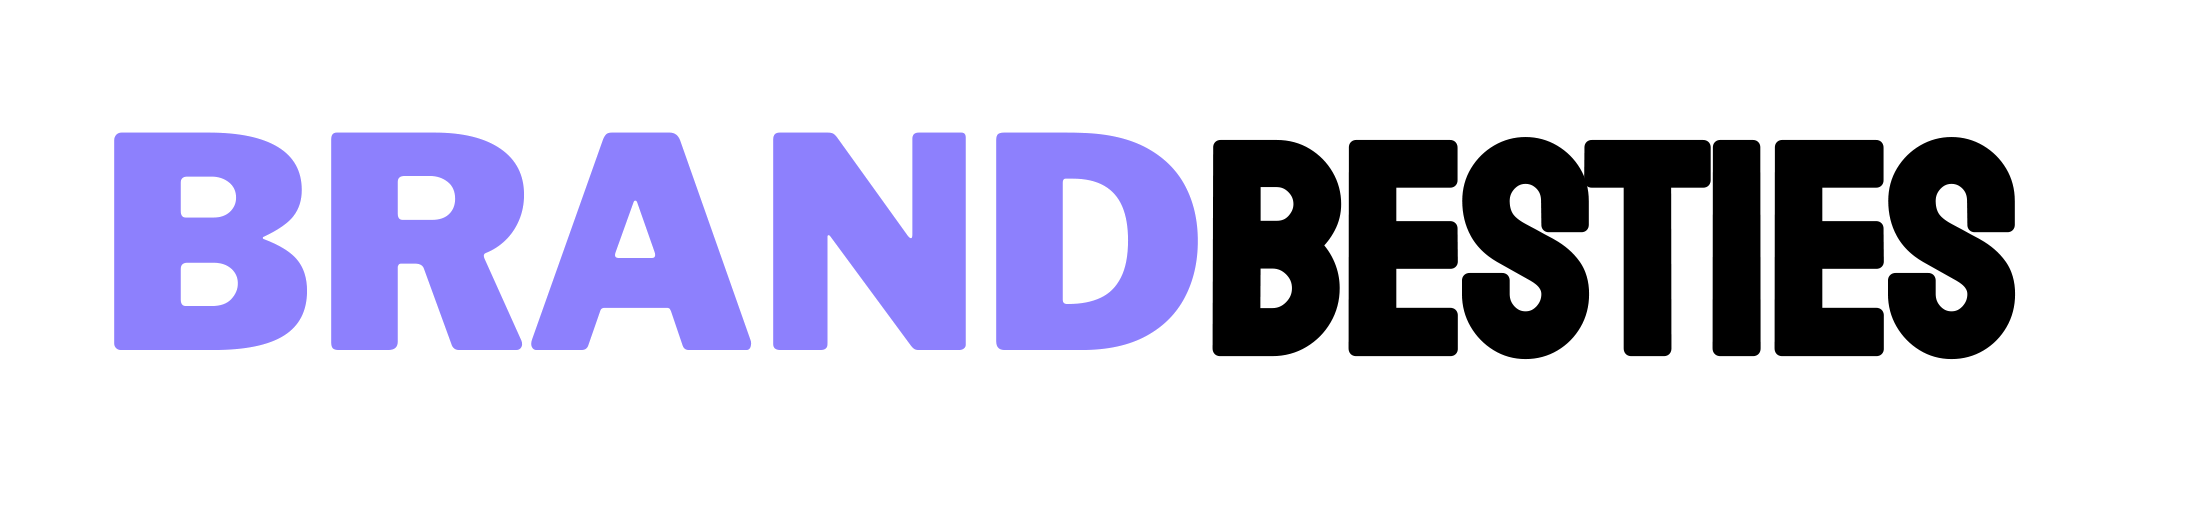 Brand Besties horizontal logo